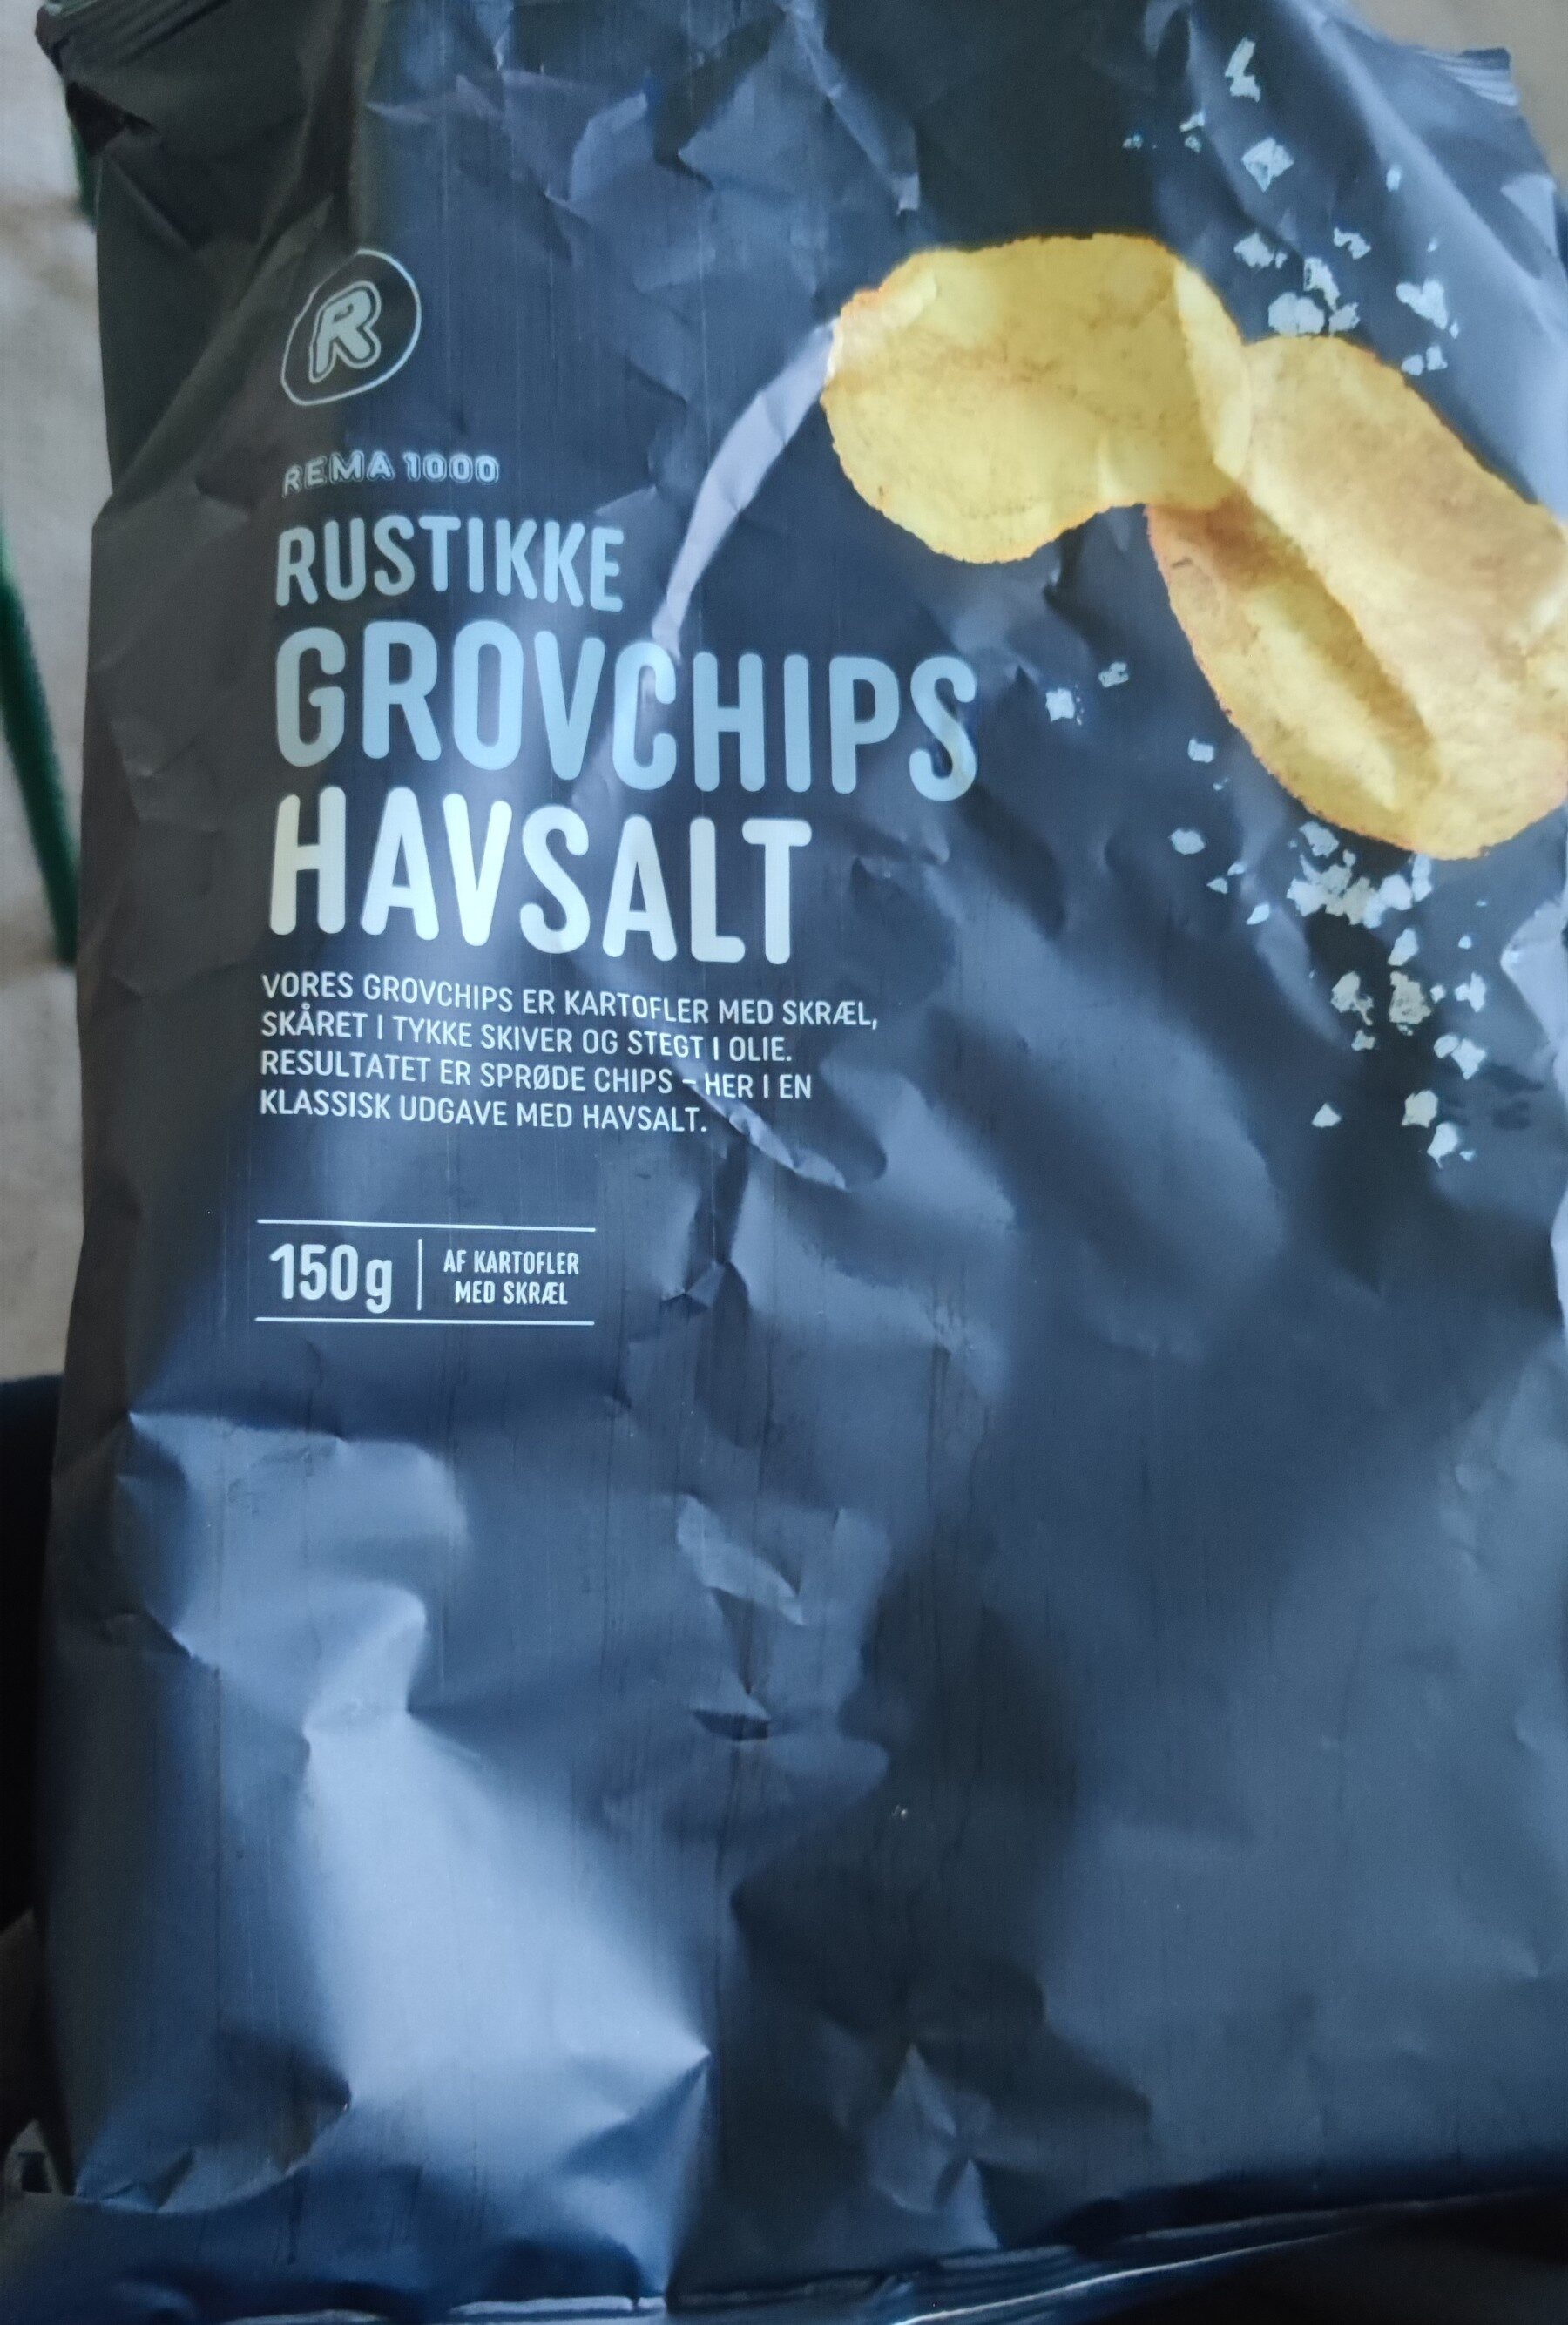 Rustikke Grovchips Havsalt - Produkt - en